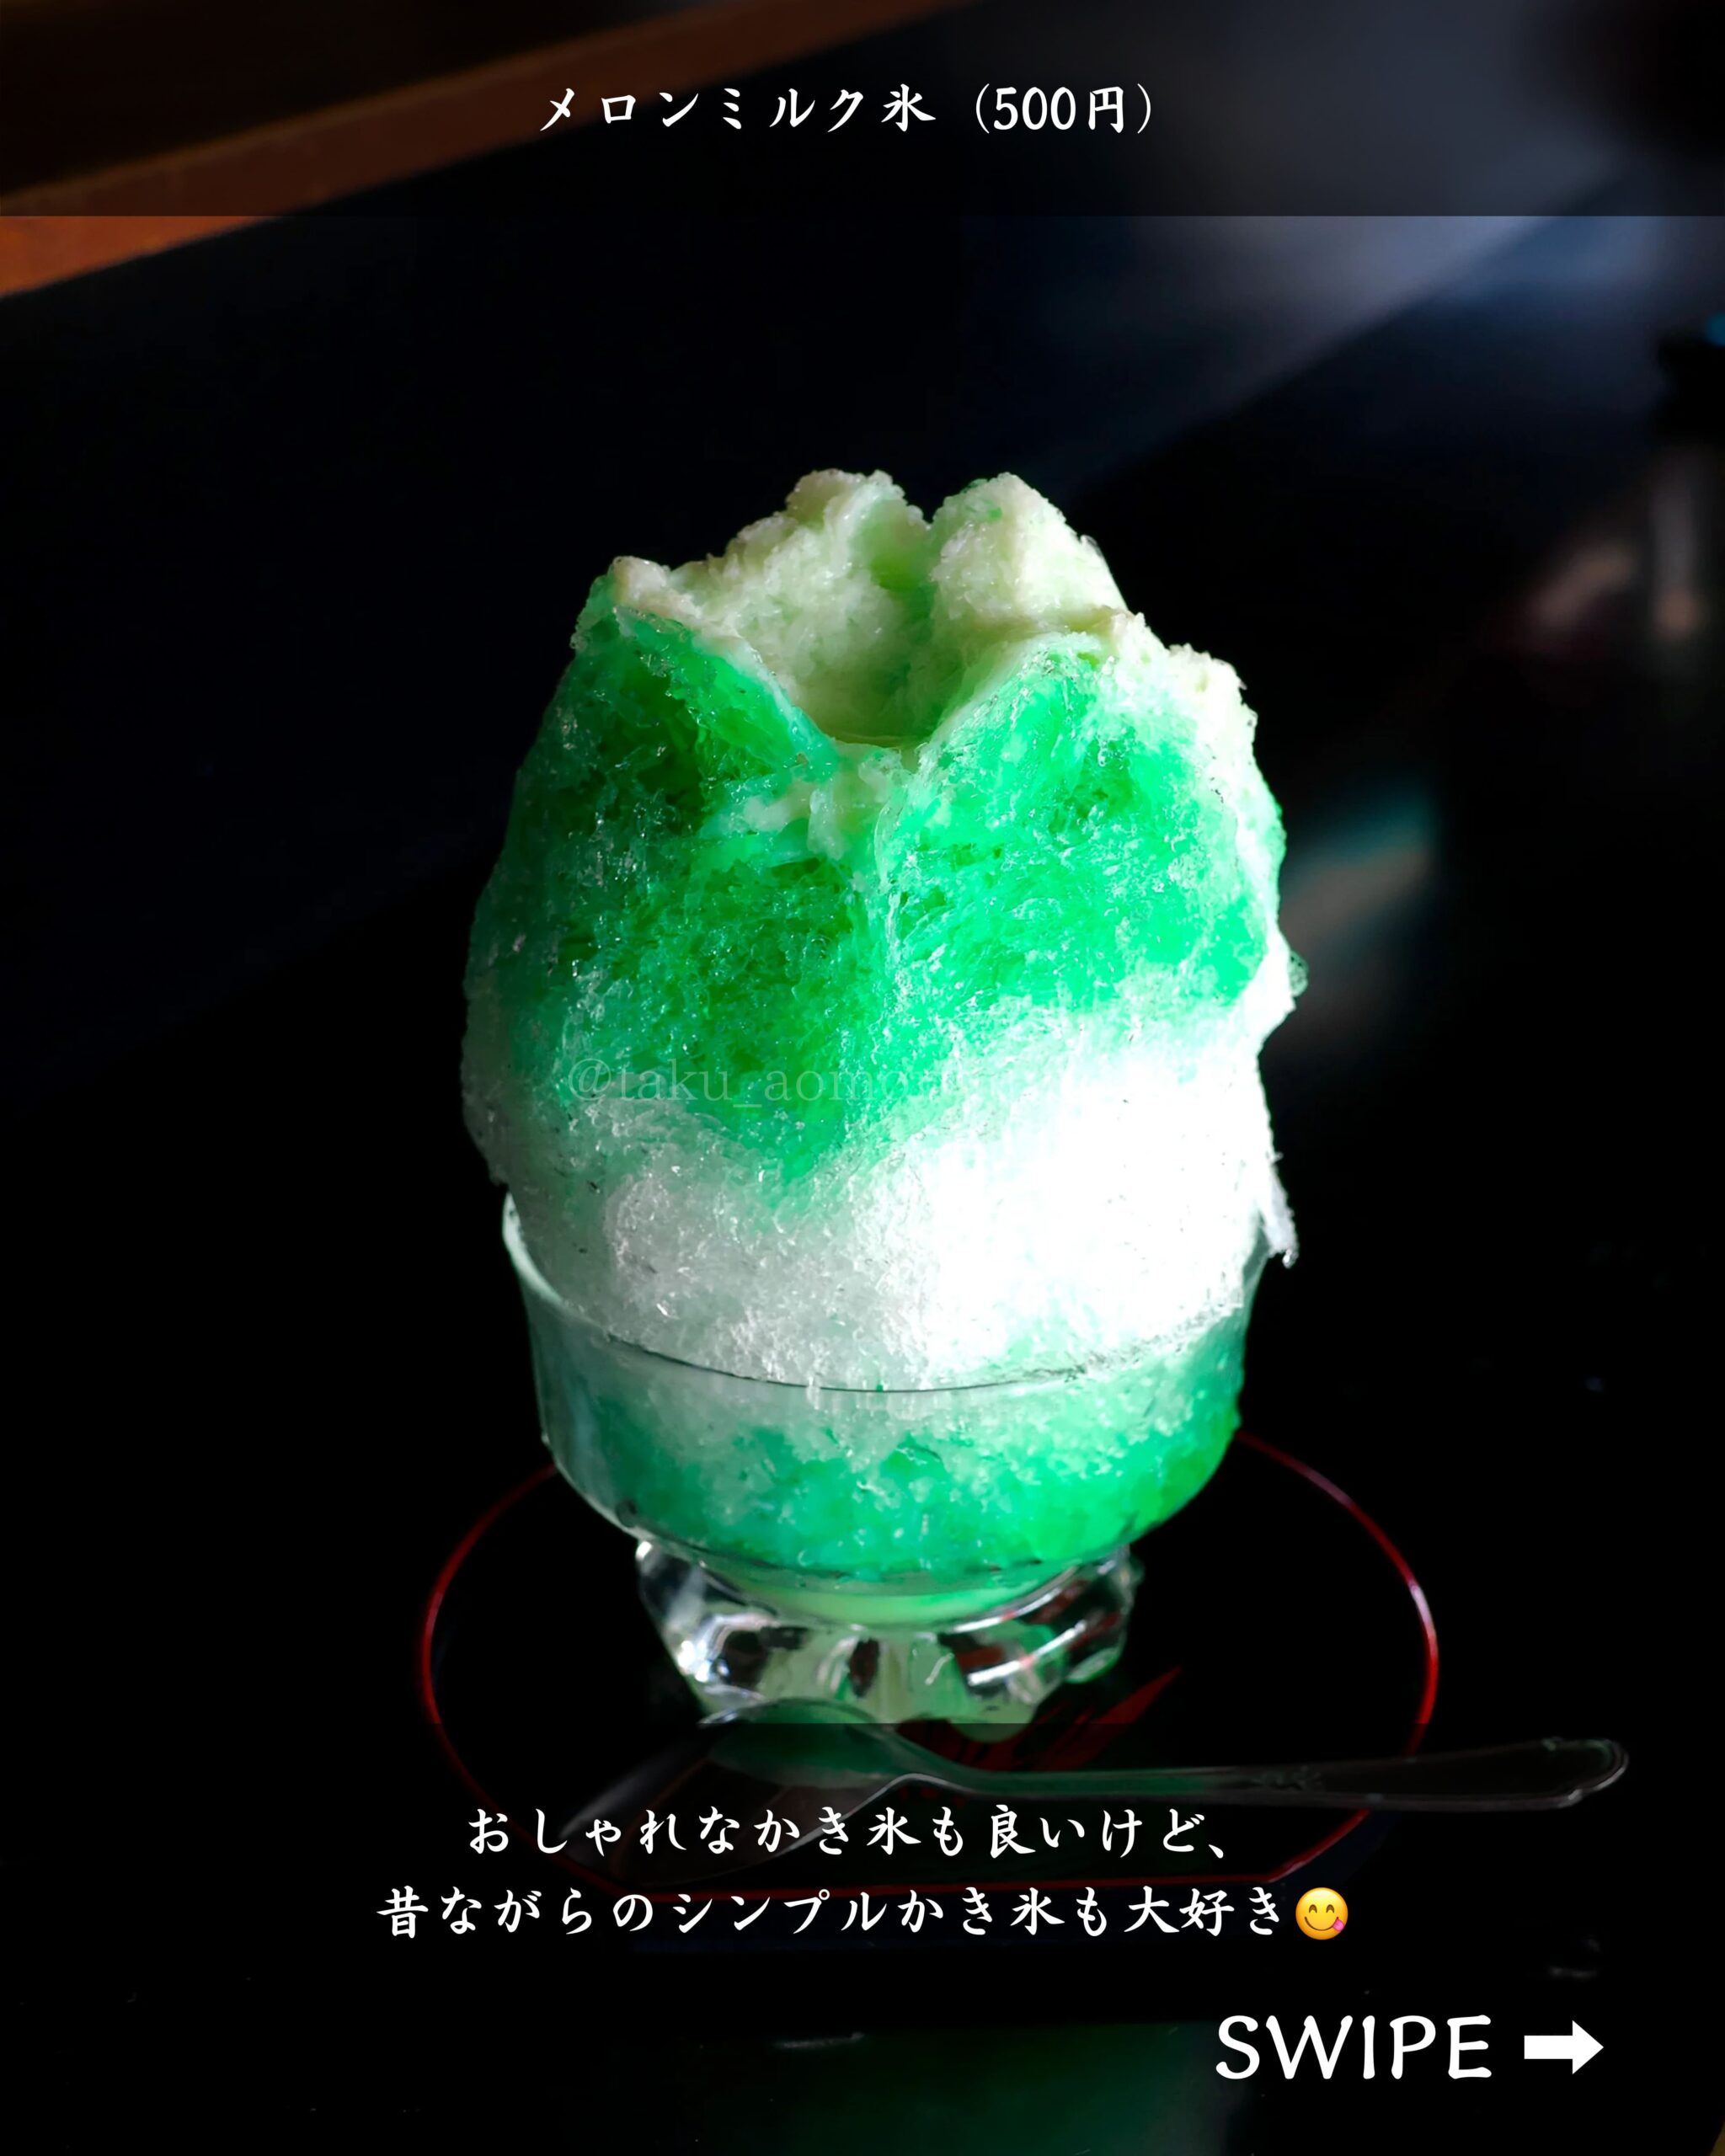 青森県弘前市にある「小山内冷菓店」の「メロンミルク氷（500円）」